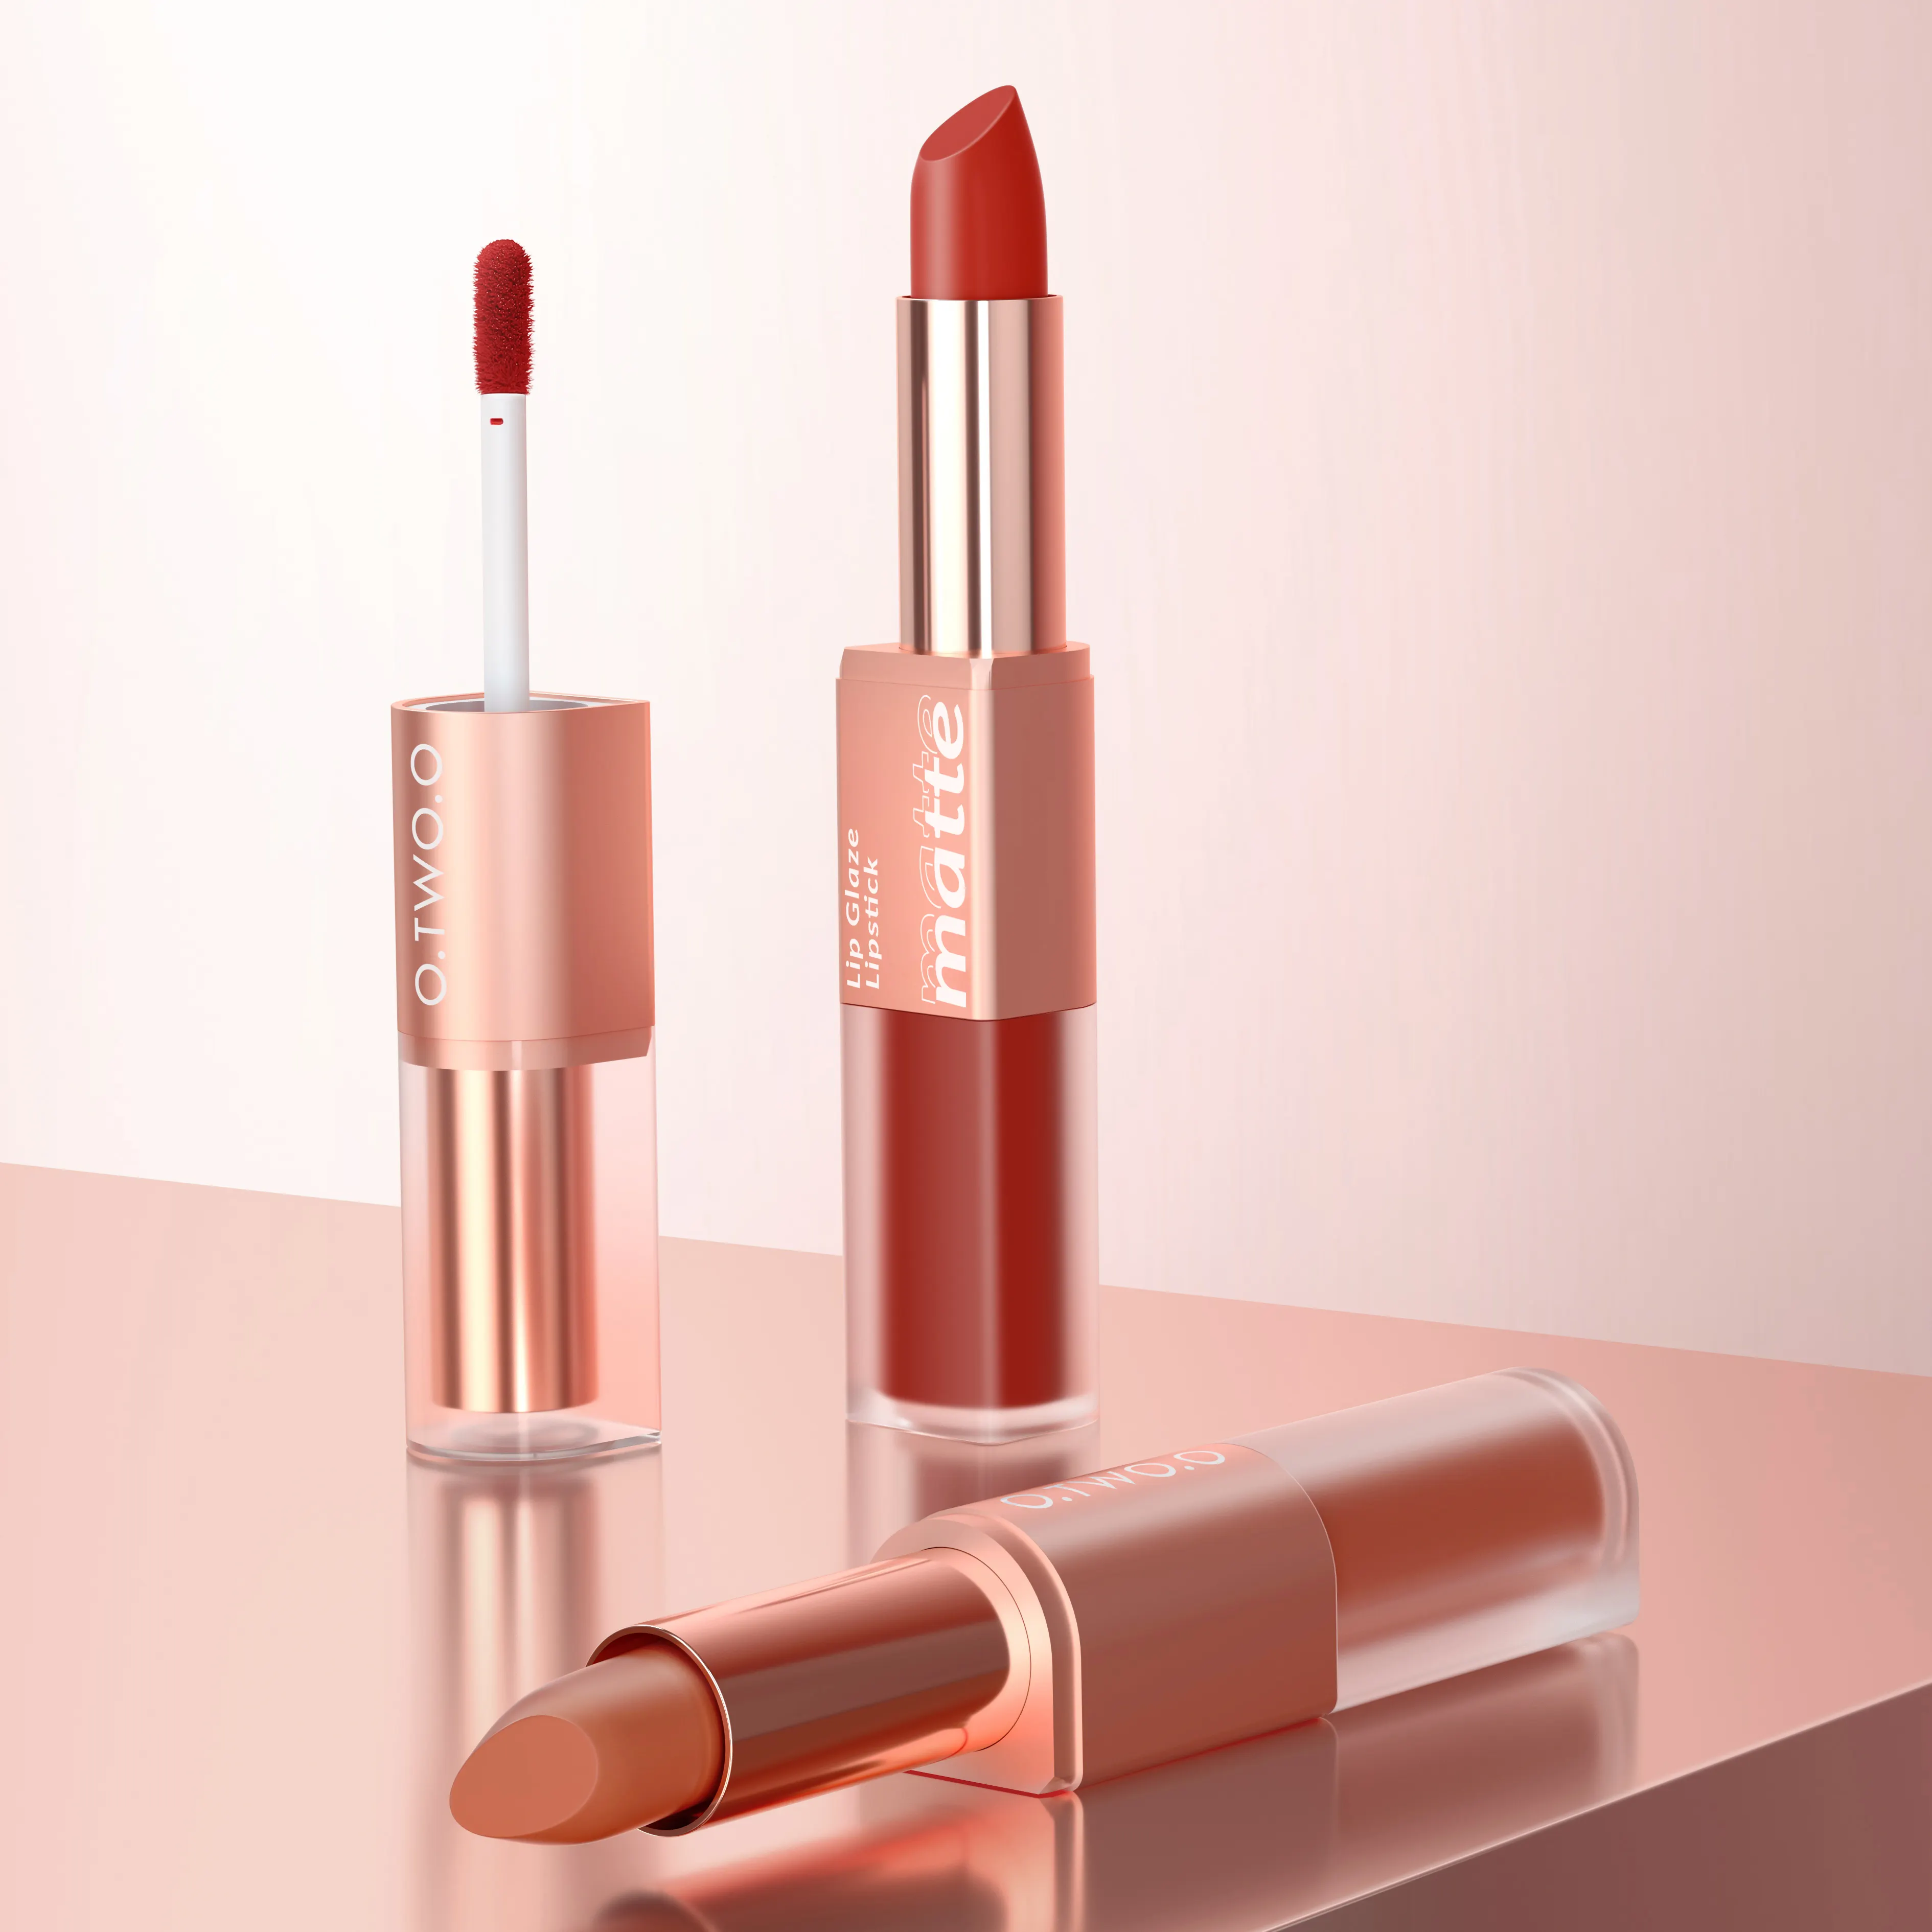 O.TWO.O Private Label Beauty Cosmetics Multi Colored Lip Makeup Matte Waterproof Liquid Lipstick 2 in 1 Lip Gloss